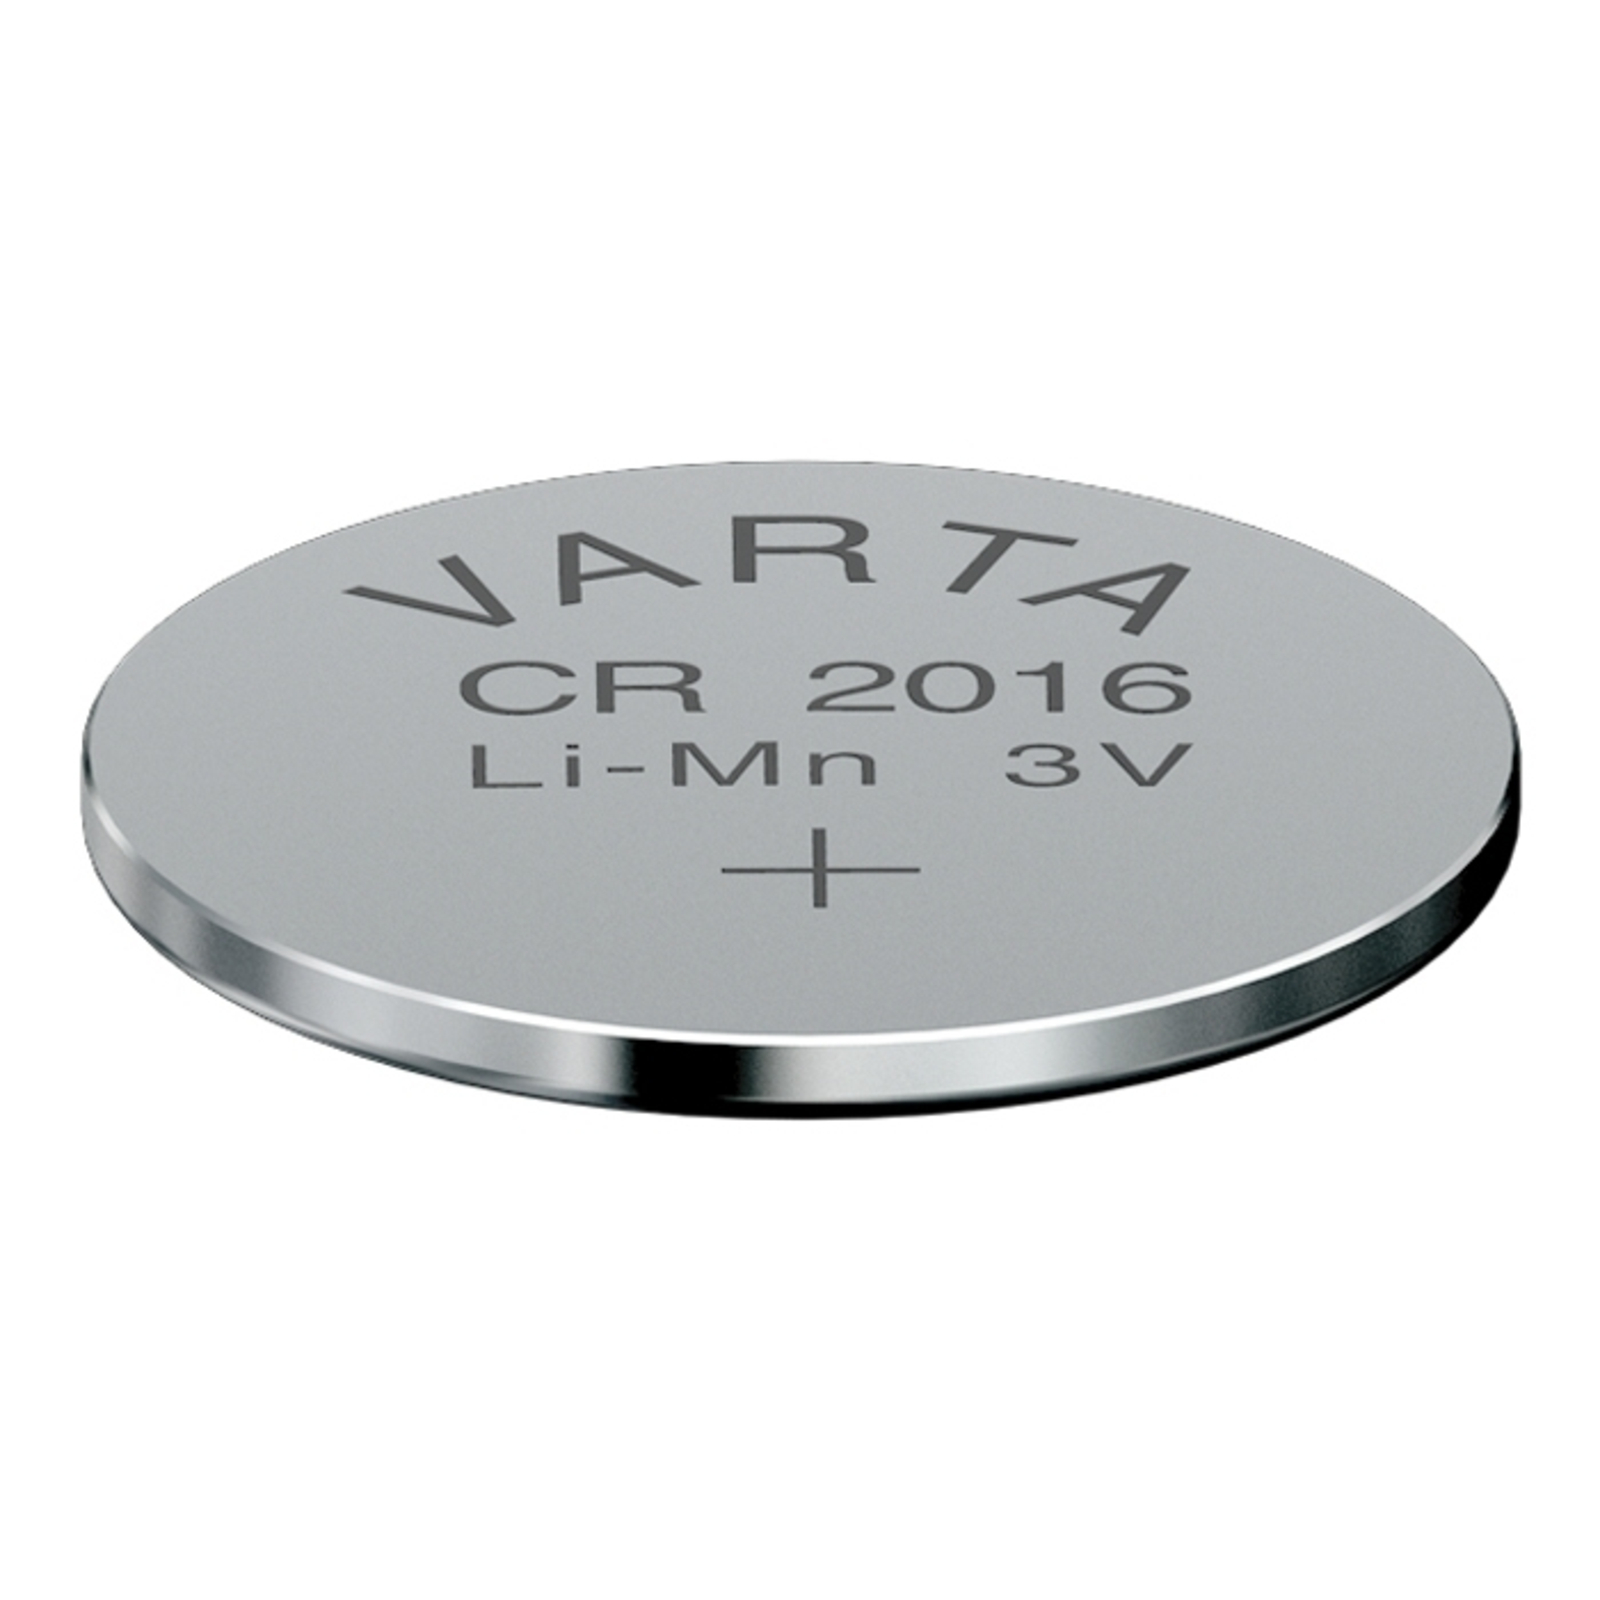 Lítiový CR2016 3V gombíkový akumulátor VARTA